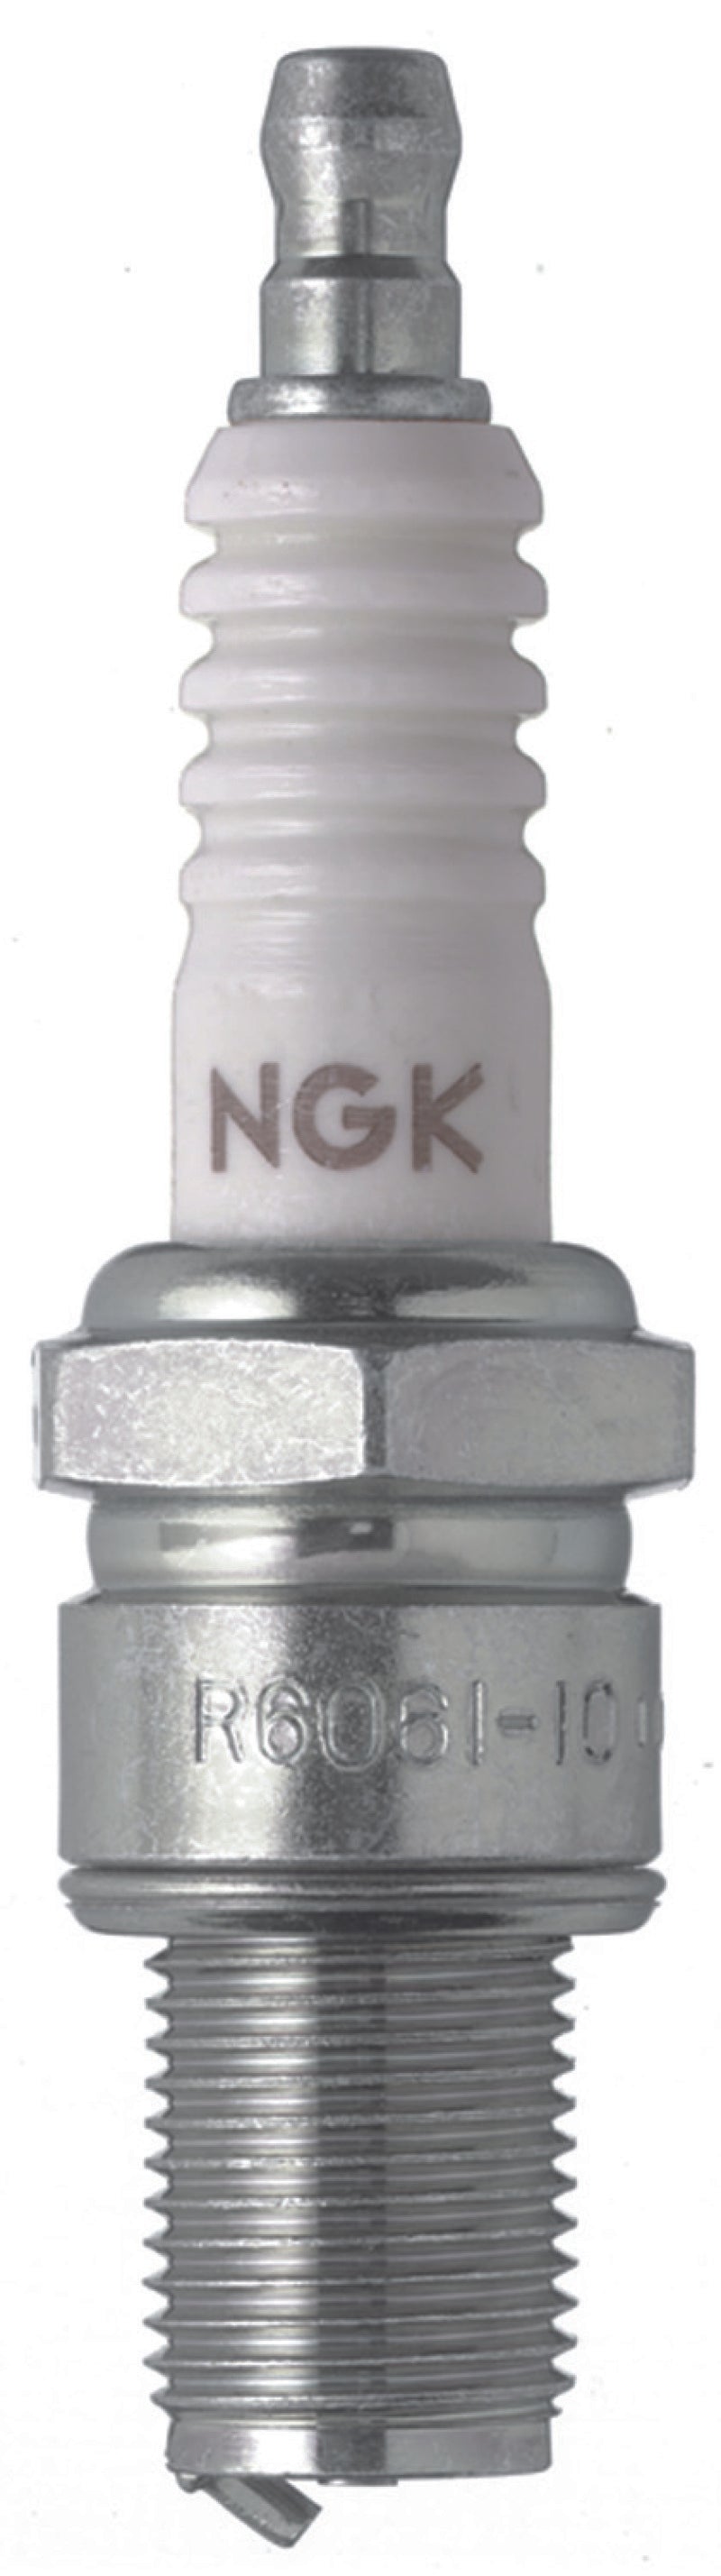 NGK Nickel Spark Plug Box of 10 (R6061-10)